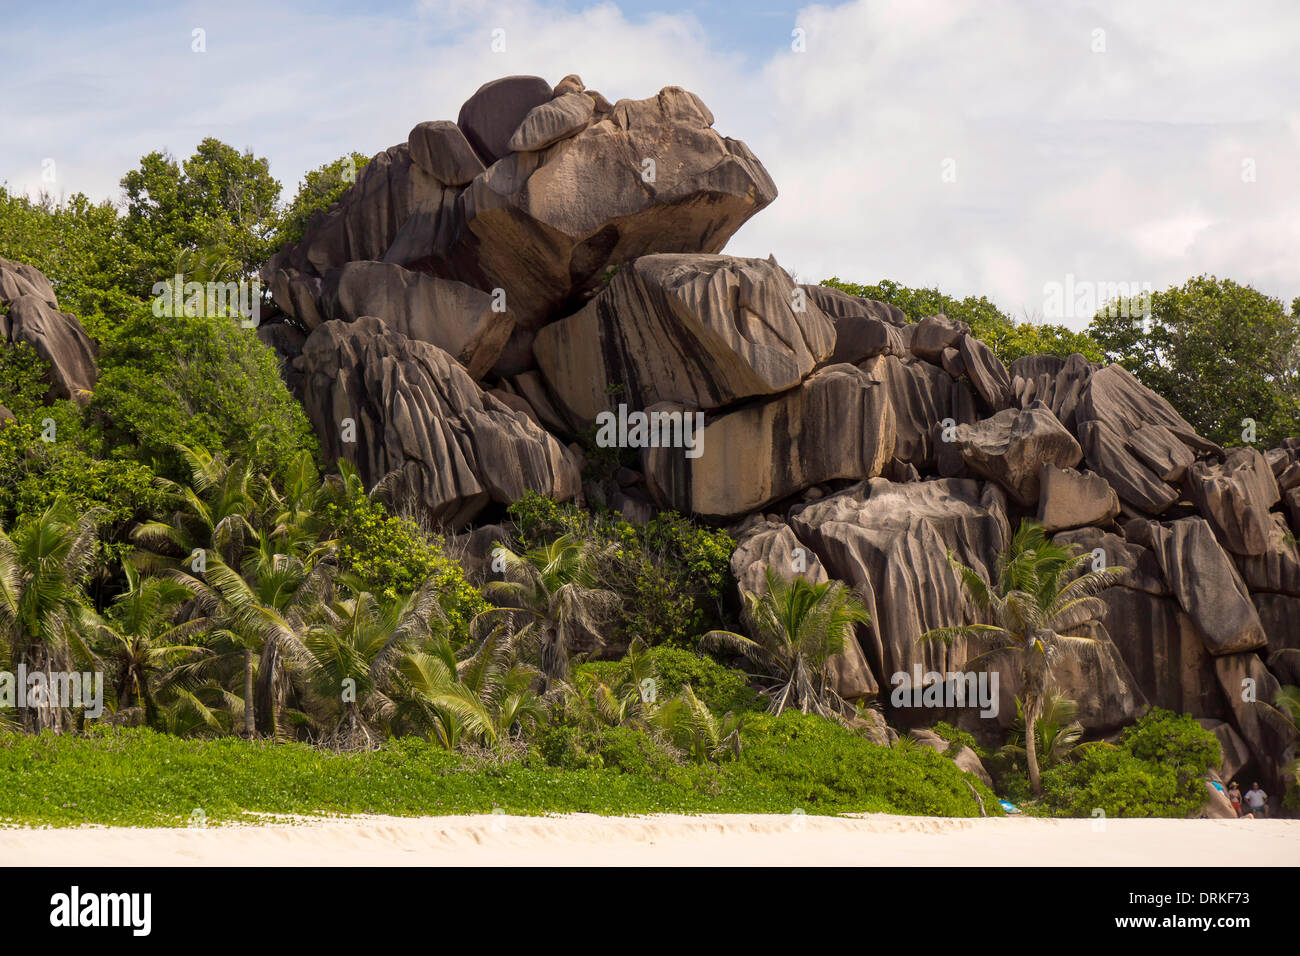 Fantastica spiaggia di sabbia tipico delle Seychelles formazioni rocciose, Grand Anse, La Digue, Seychelles, Oceano Indiano e Africa - 2013 Foto Stock